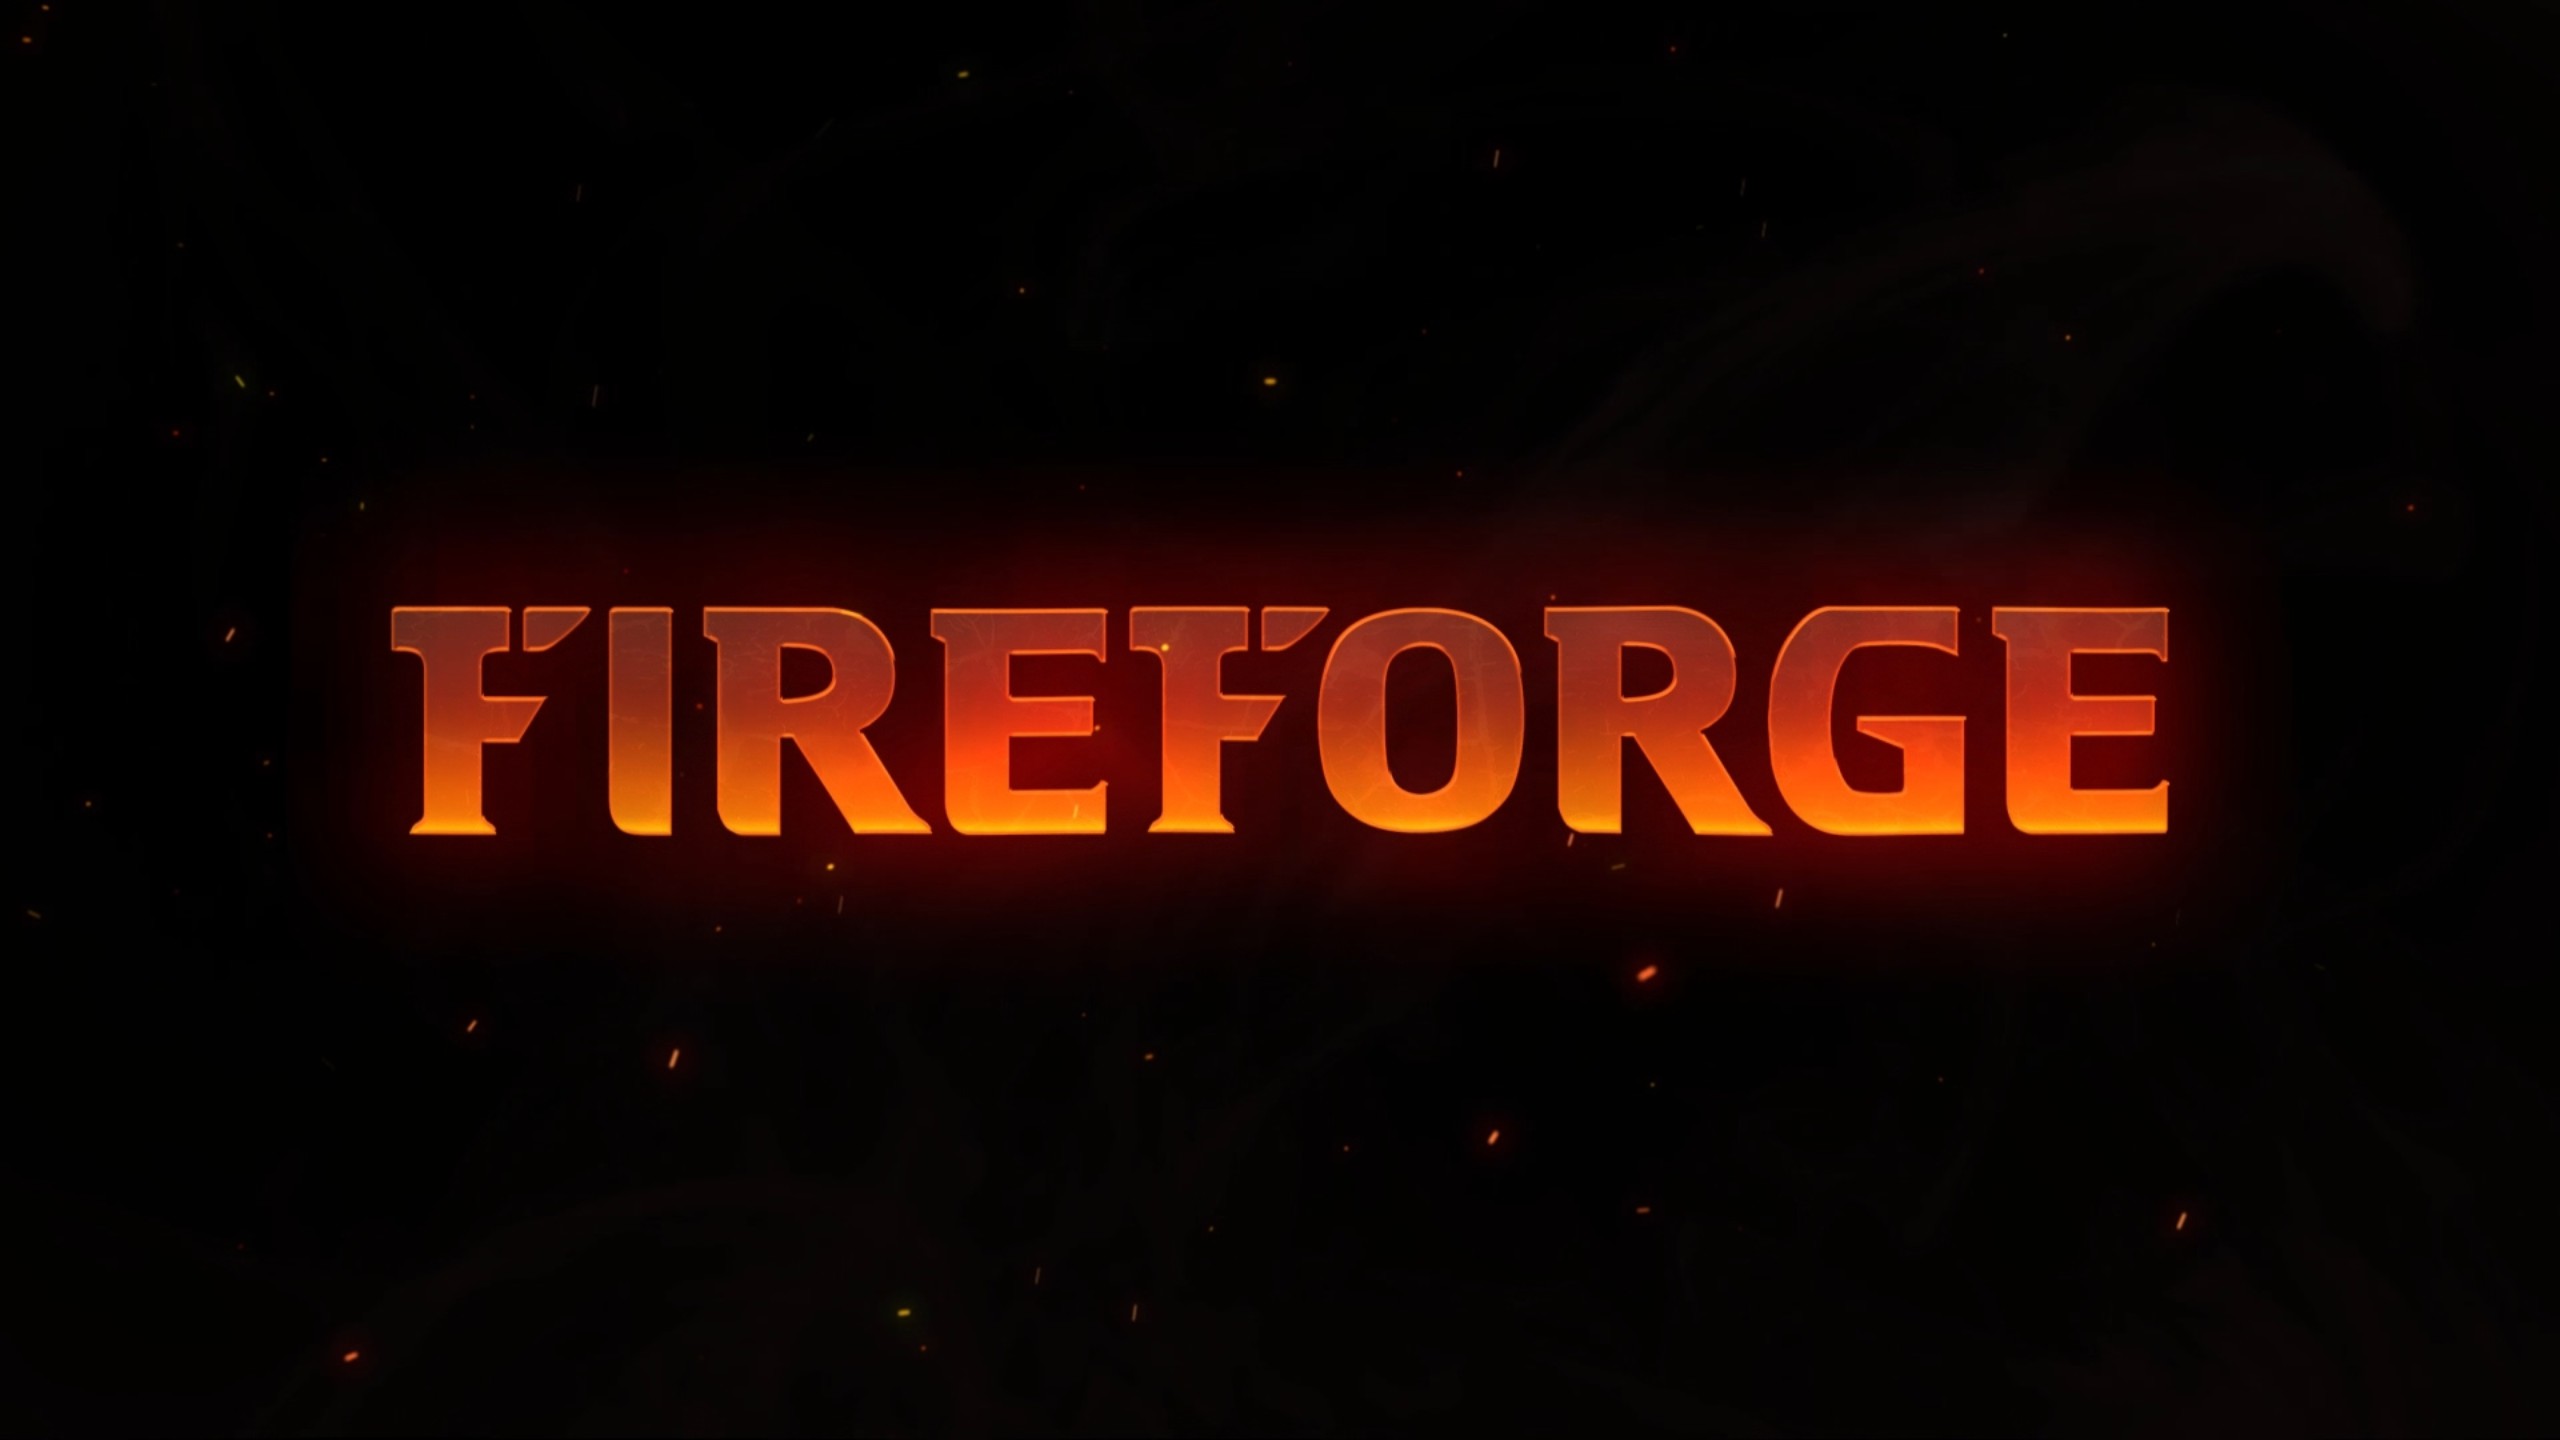 Ghostbusters Developer Fireforge Games Goes Bankrupt